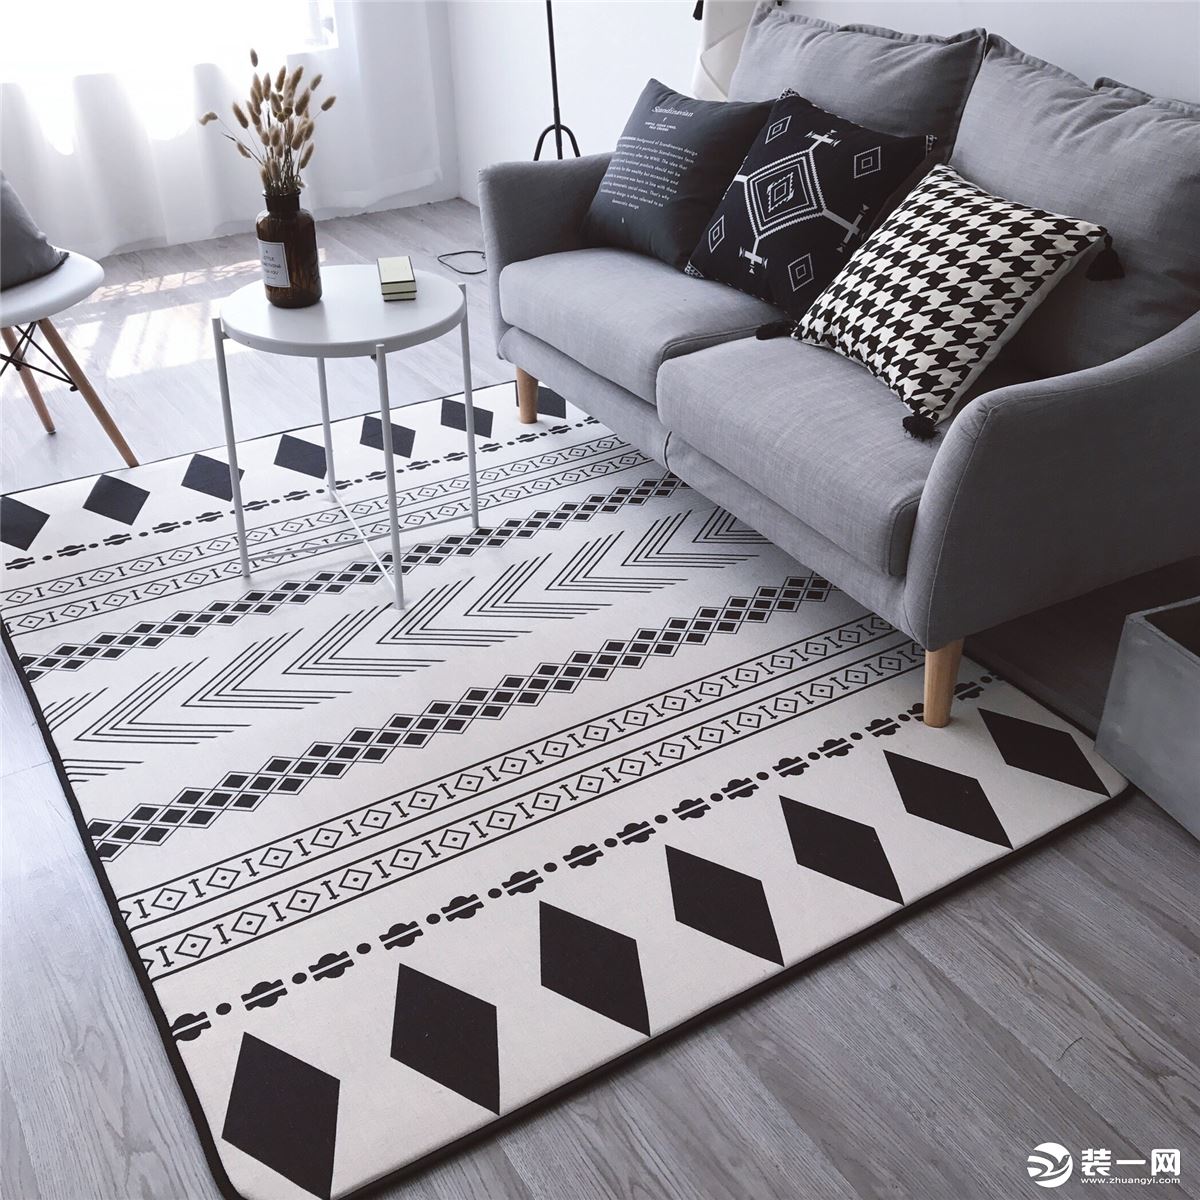 2018最热北欧风格几何图案地毯设计客厅地毯图片